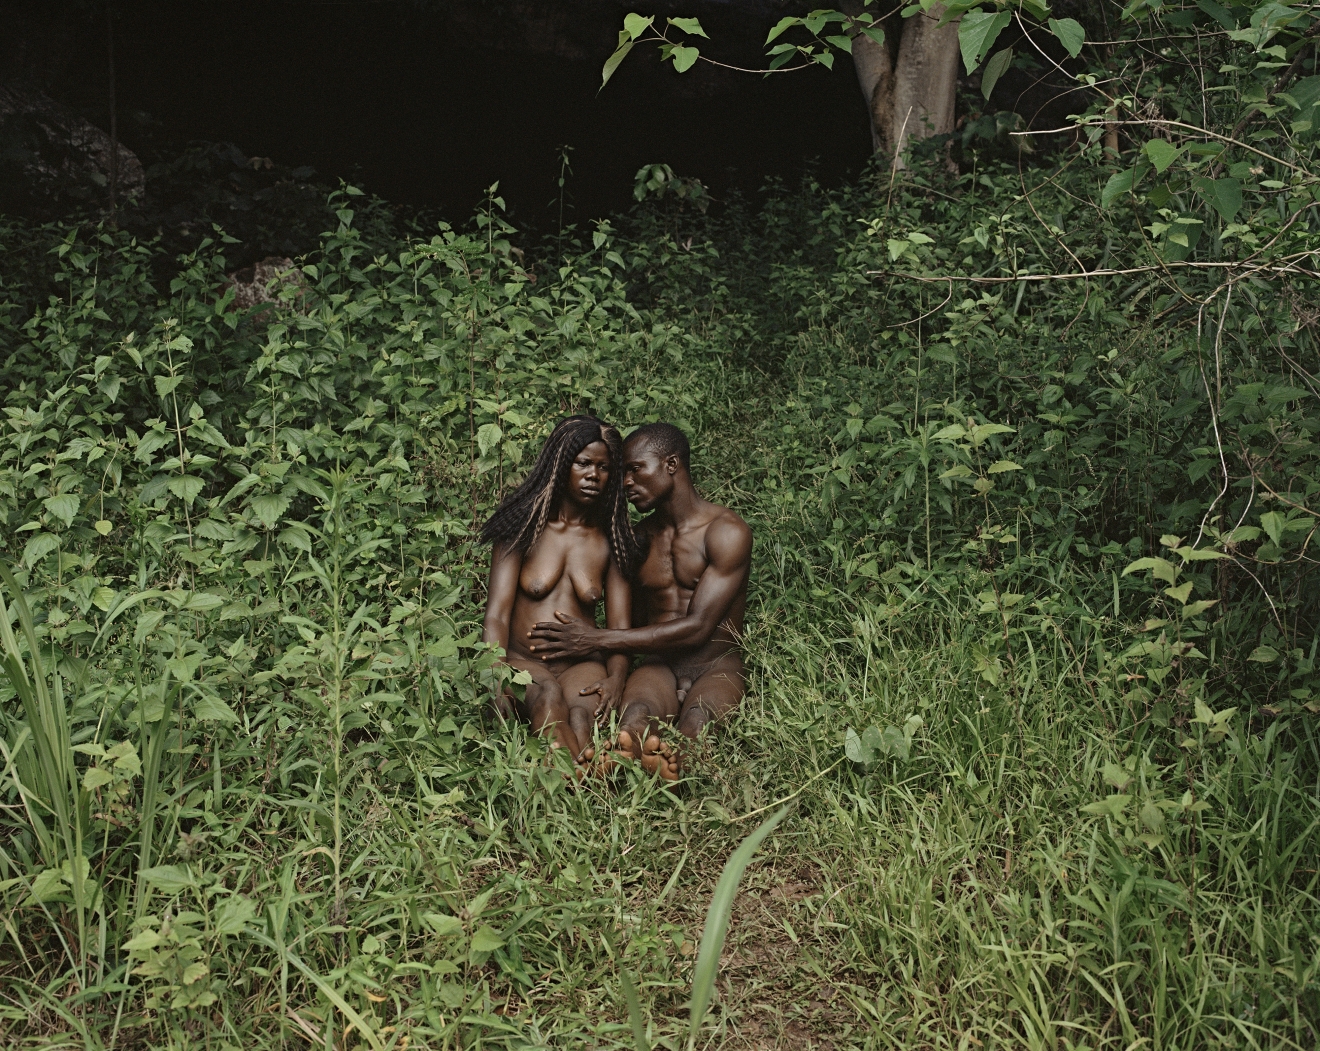 Deana Lawson The Garden, Gemena, DR Congo, 2015